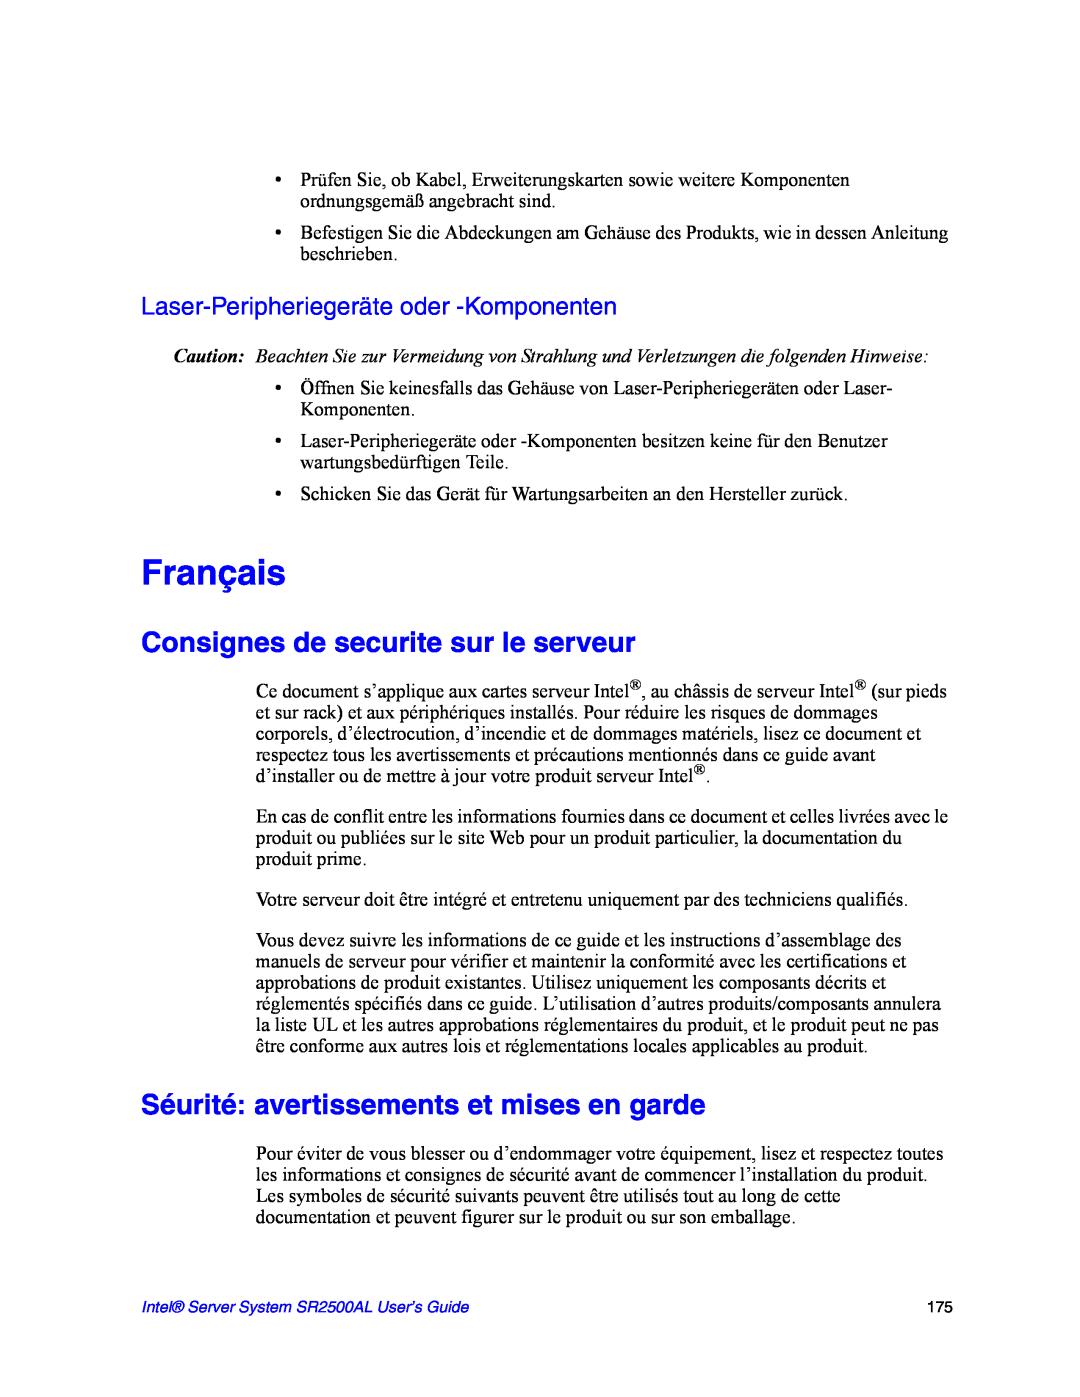 Intel SR2500AL manual Consignes de securite sur le serveur, Séurité avertissements et mises en garde, Français 